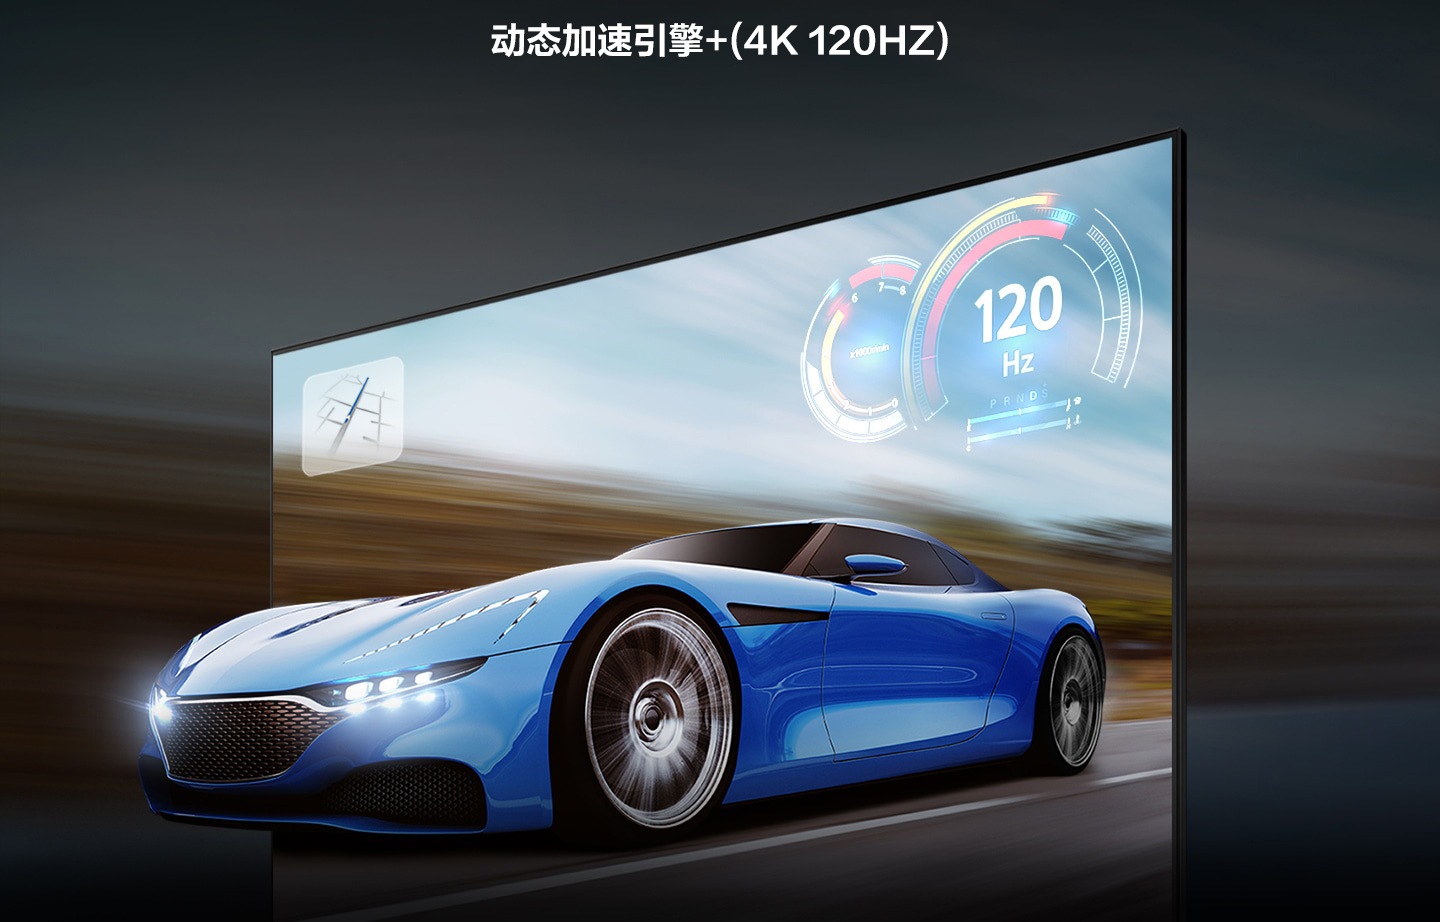 Một chiếc xe đua trên màn hình TV trông rõ ràng và dễ nhìn hơn trên TV QLED so với trên TV thông thường nhờ công nghệ tăng tốc chuyển động xcelerator turbo+.